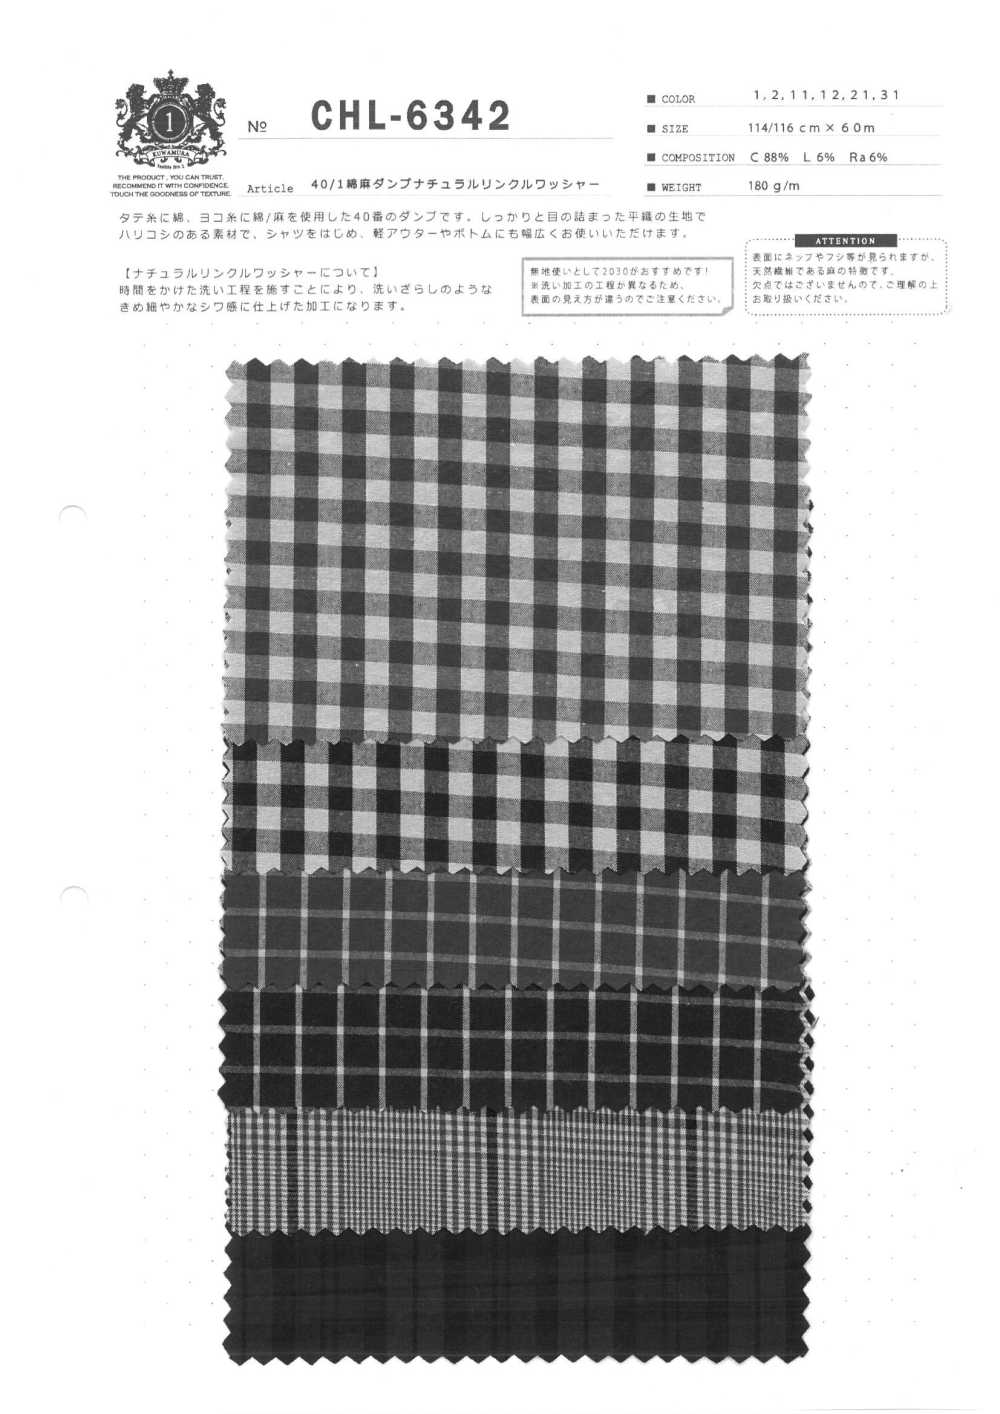 CHL-6342 Processamento De Lavadora De Linho 40/1 à Prova De Rugas Naturais[Têxtil / Tecido] Fibra Kuwamura